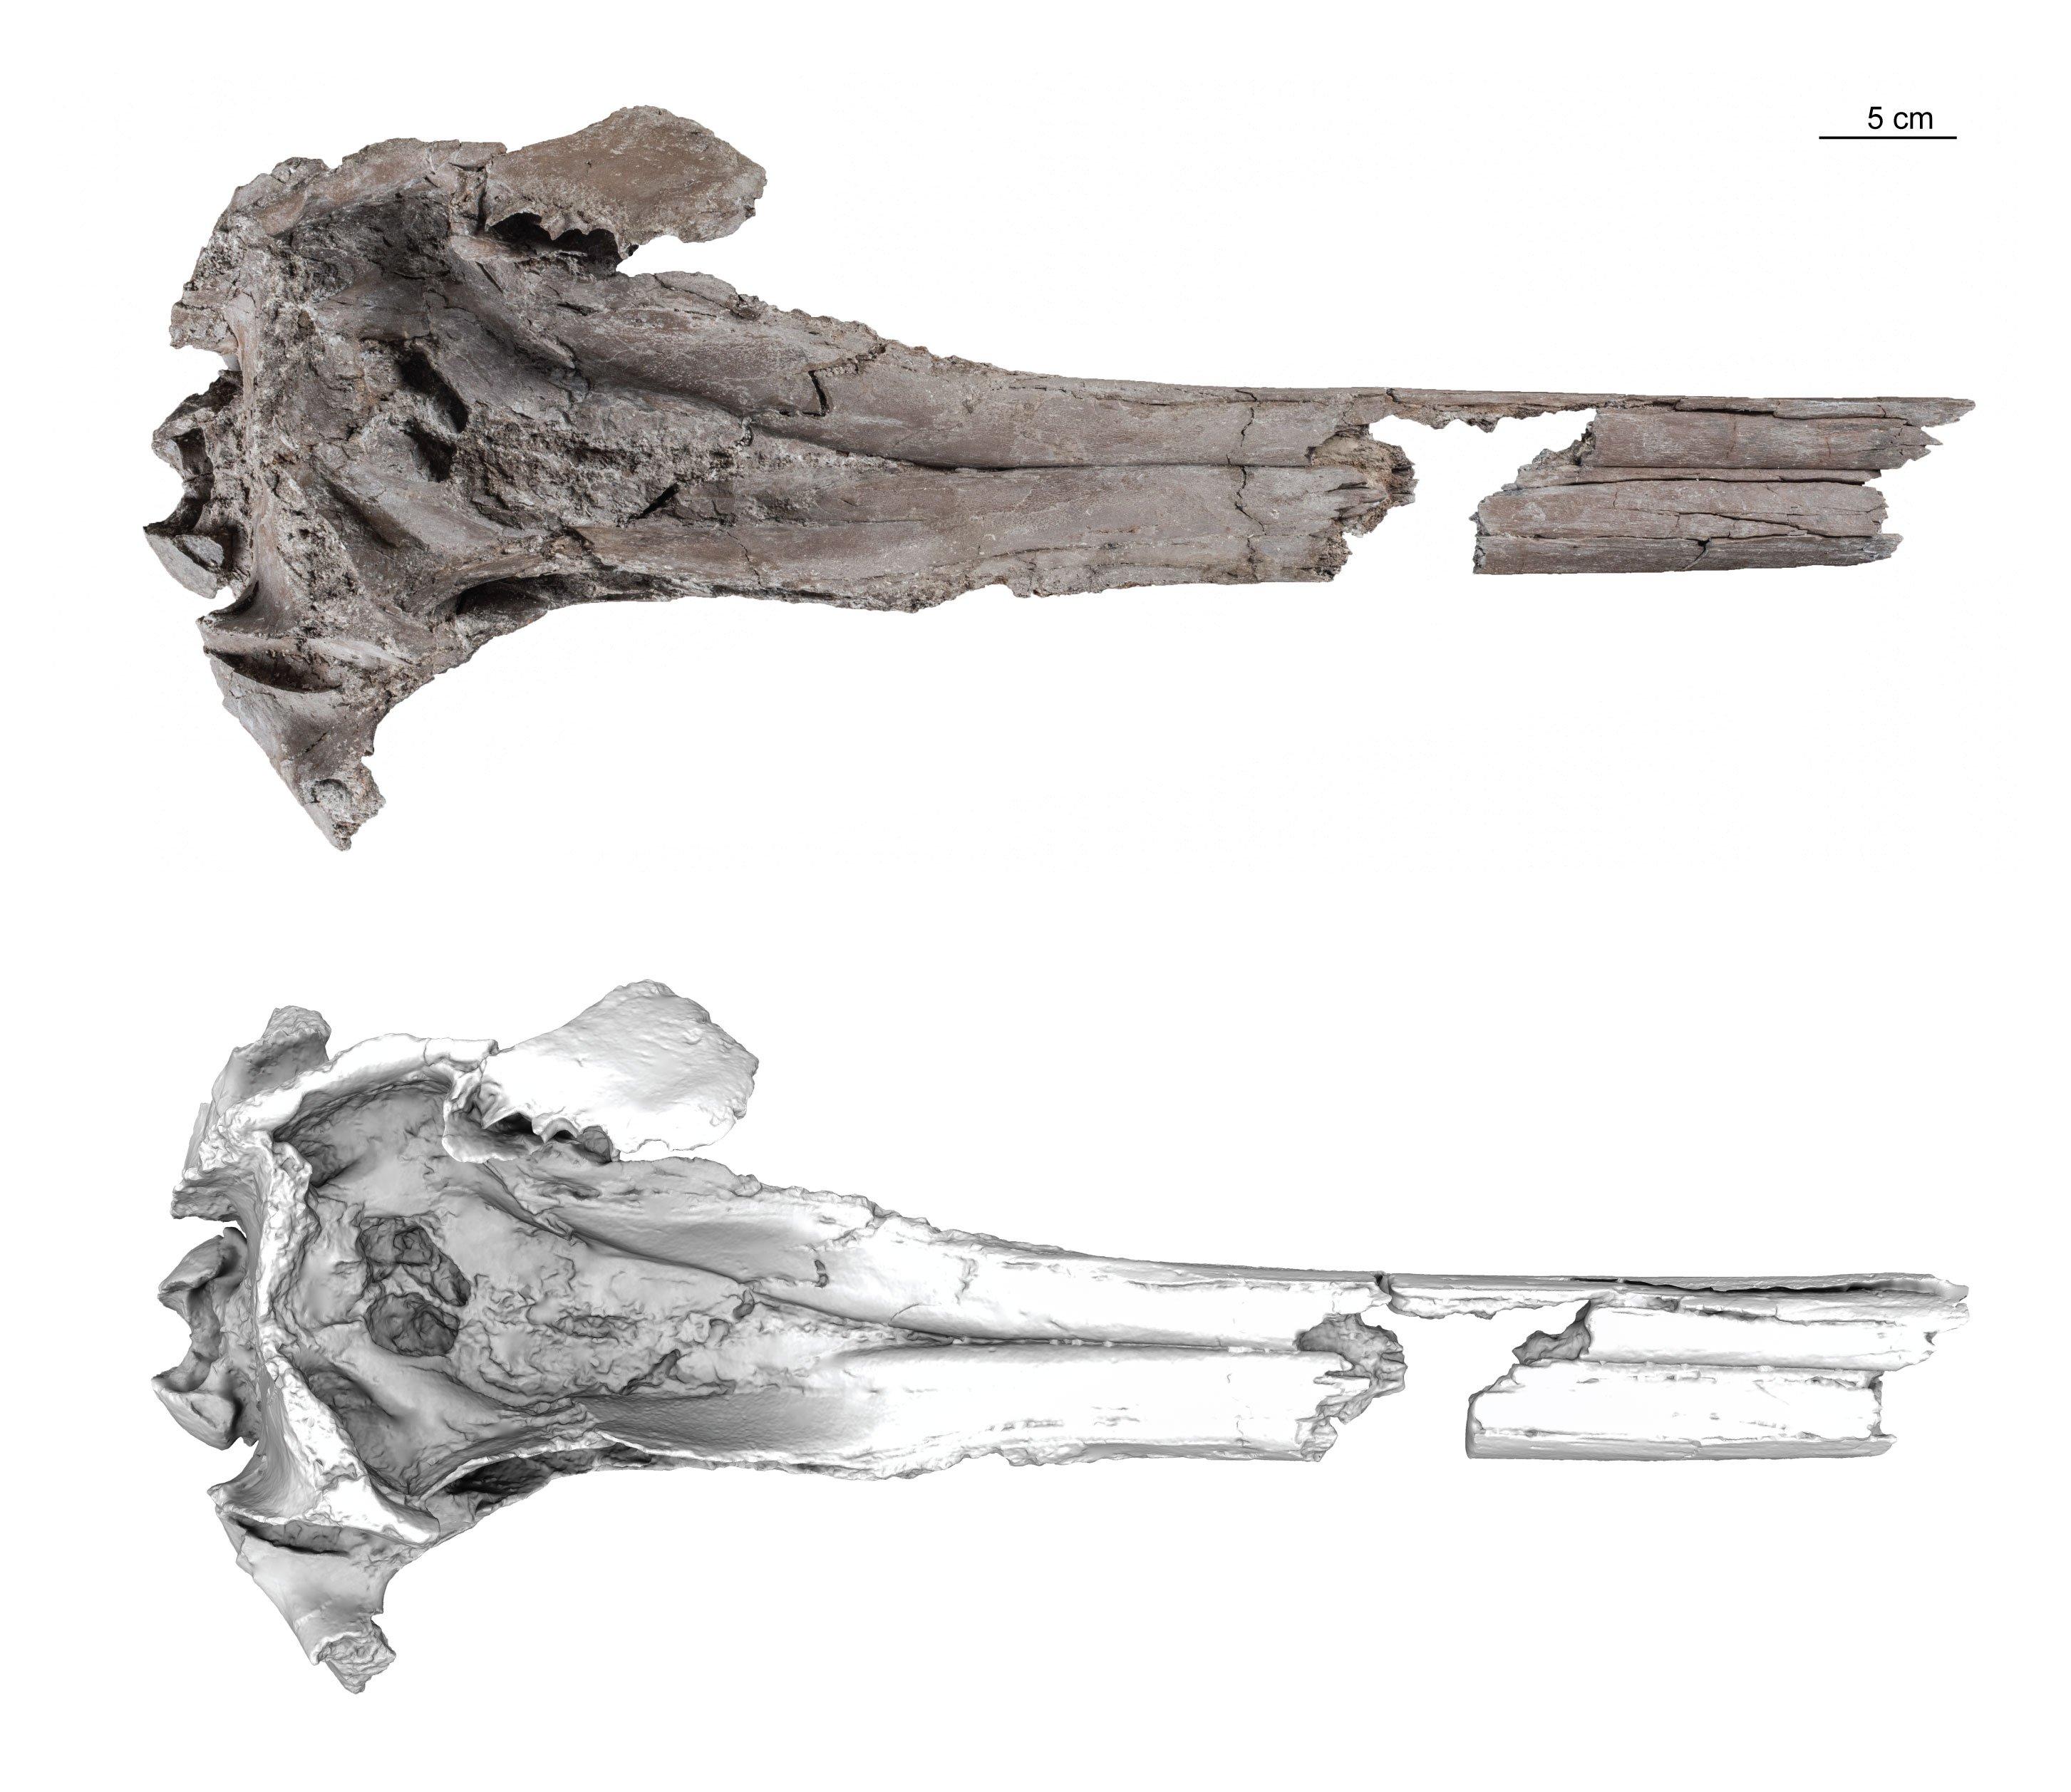 Spécimen type (holotype) de Pebanista yacuruna, comprenant une photo du spécimen et un modèle 3D de surface en vue dorsale. [Science Advances - Aldo Benites-Palomino/UZH]